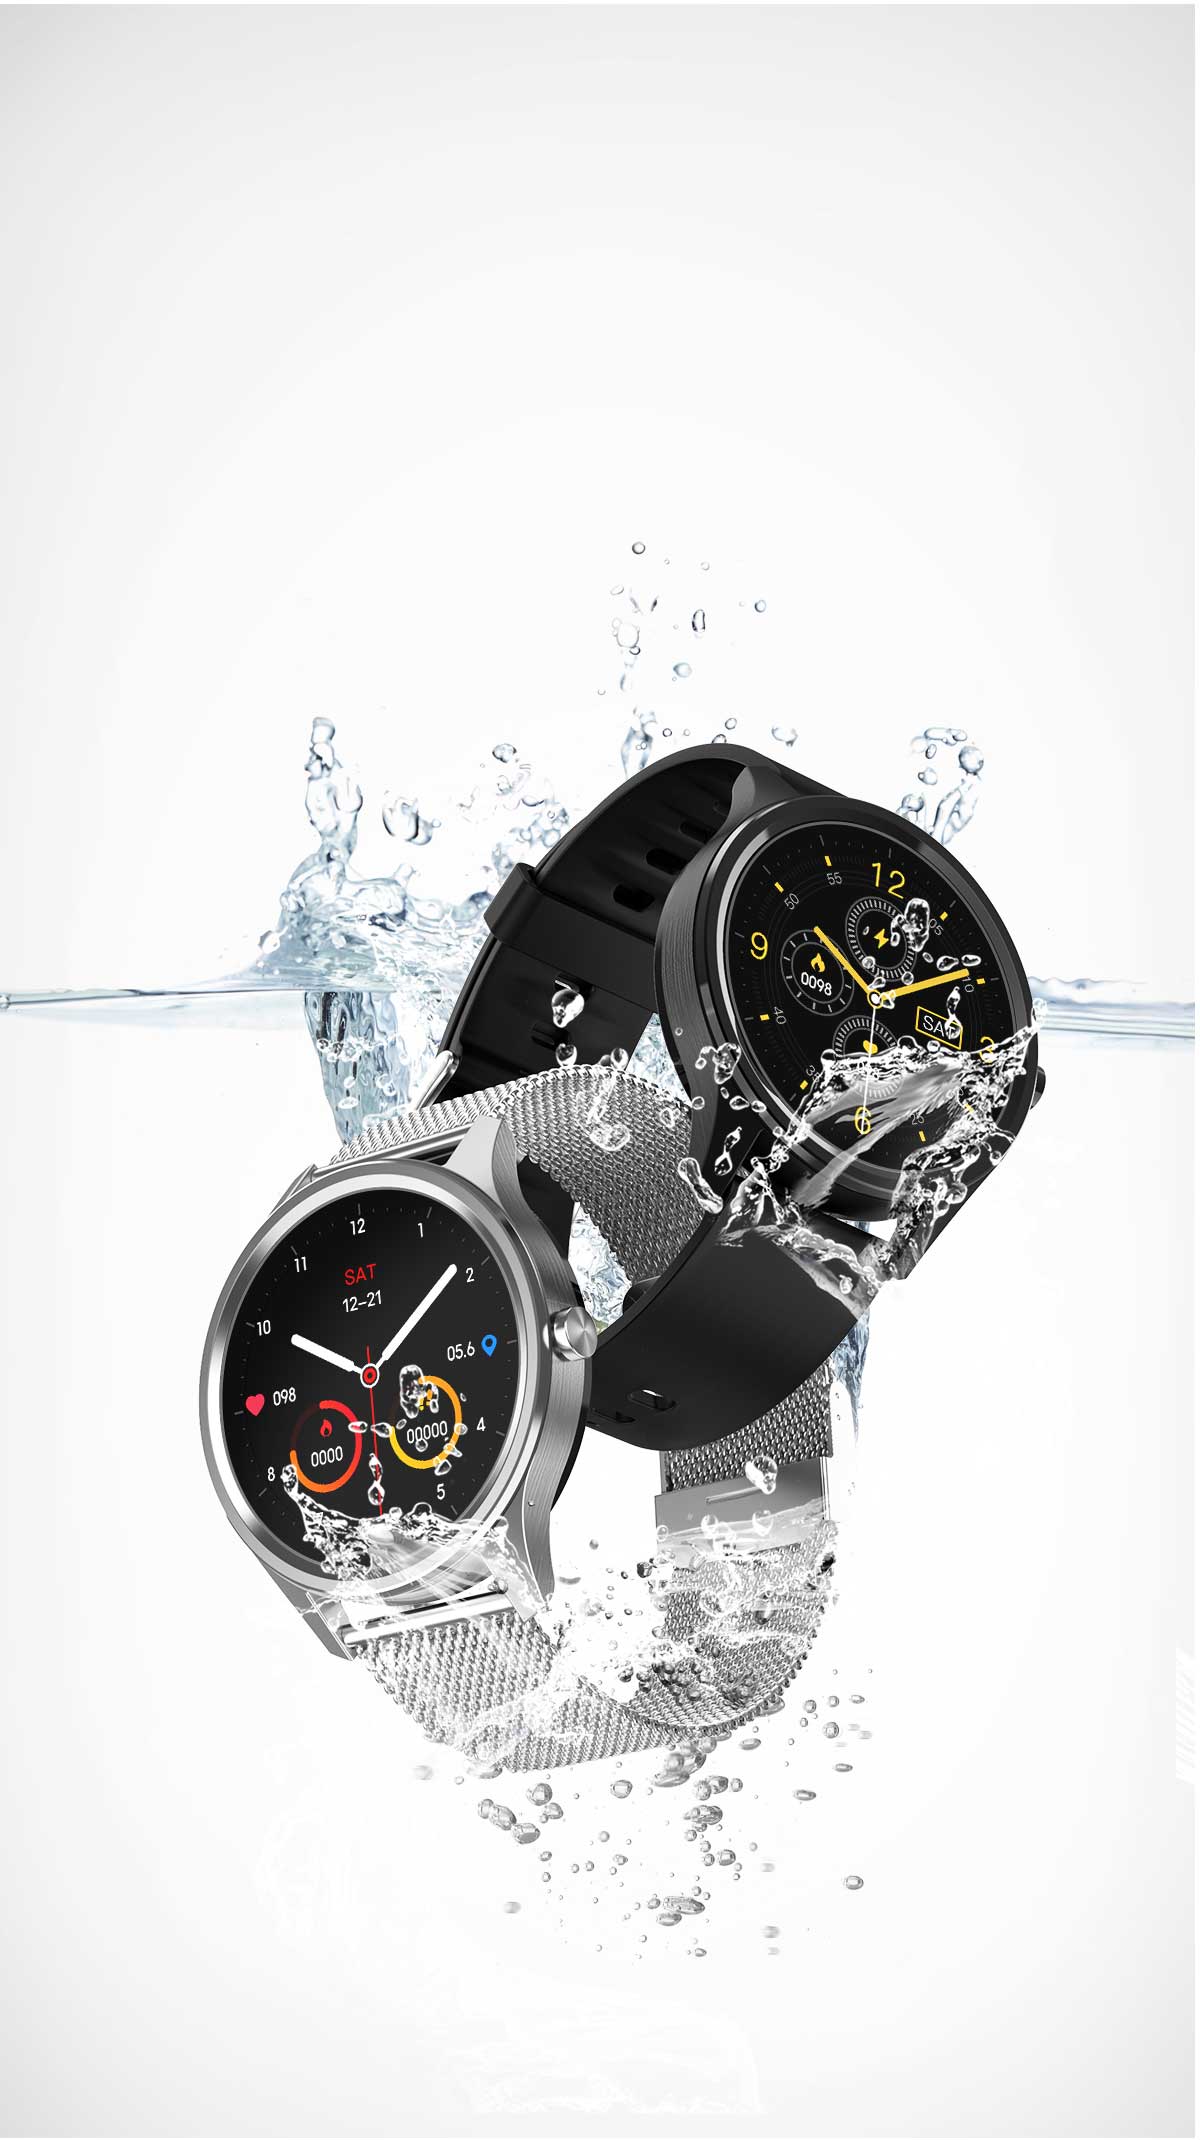 Smartwatch DT55